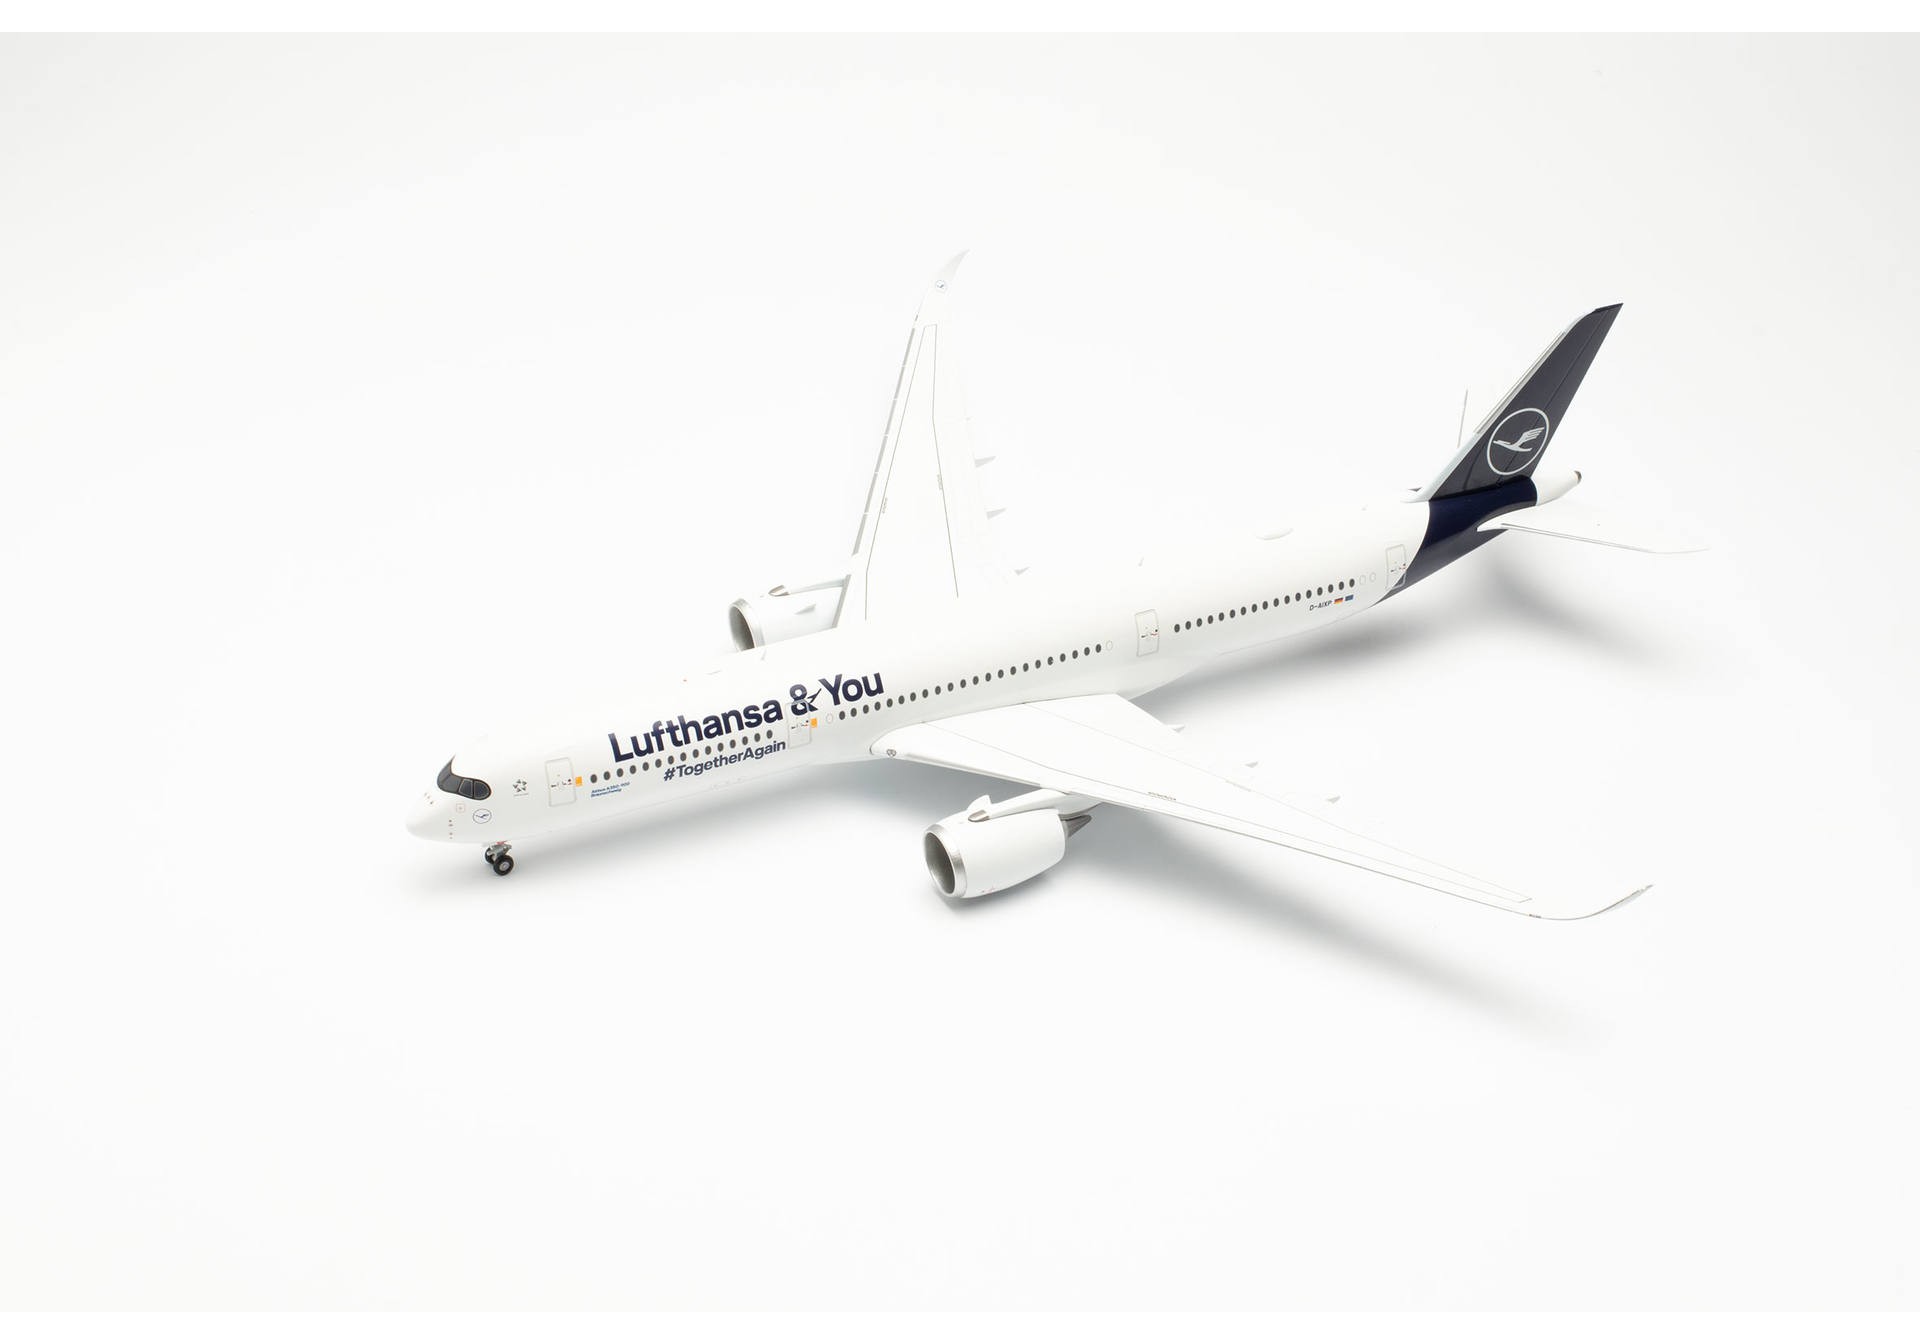 Herpa Wings 572026 Lufthansa Airbus A350 “Lufthansa & You” D-AIXP “Braunschweig” Modellflugzeug 1:200